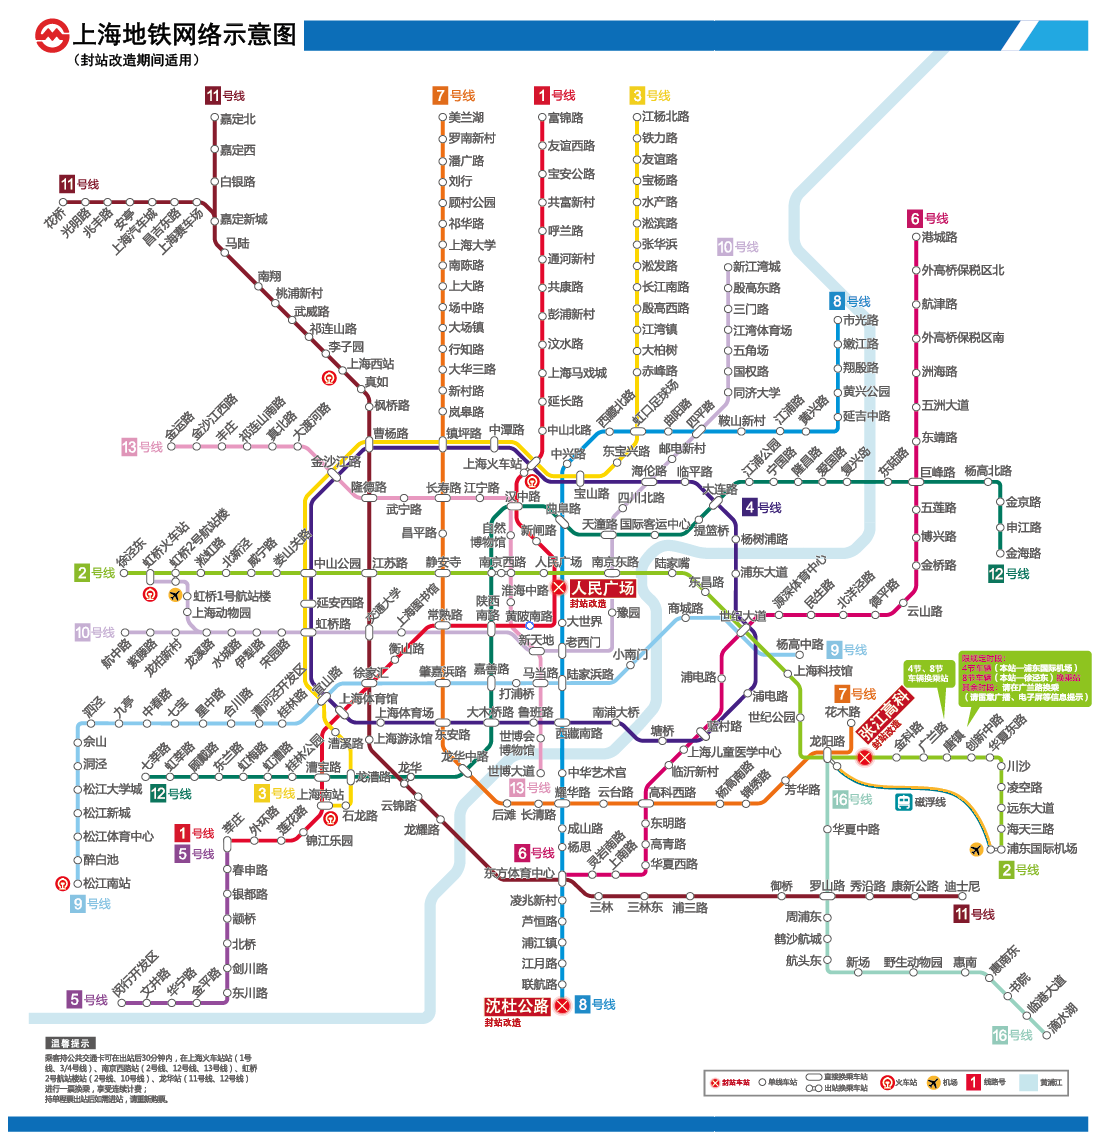 图说:春节期间上海地铁运营线路图 地铁供图